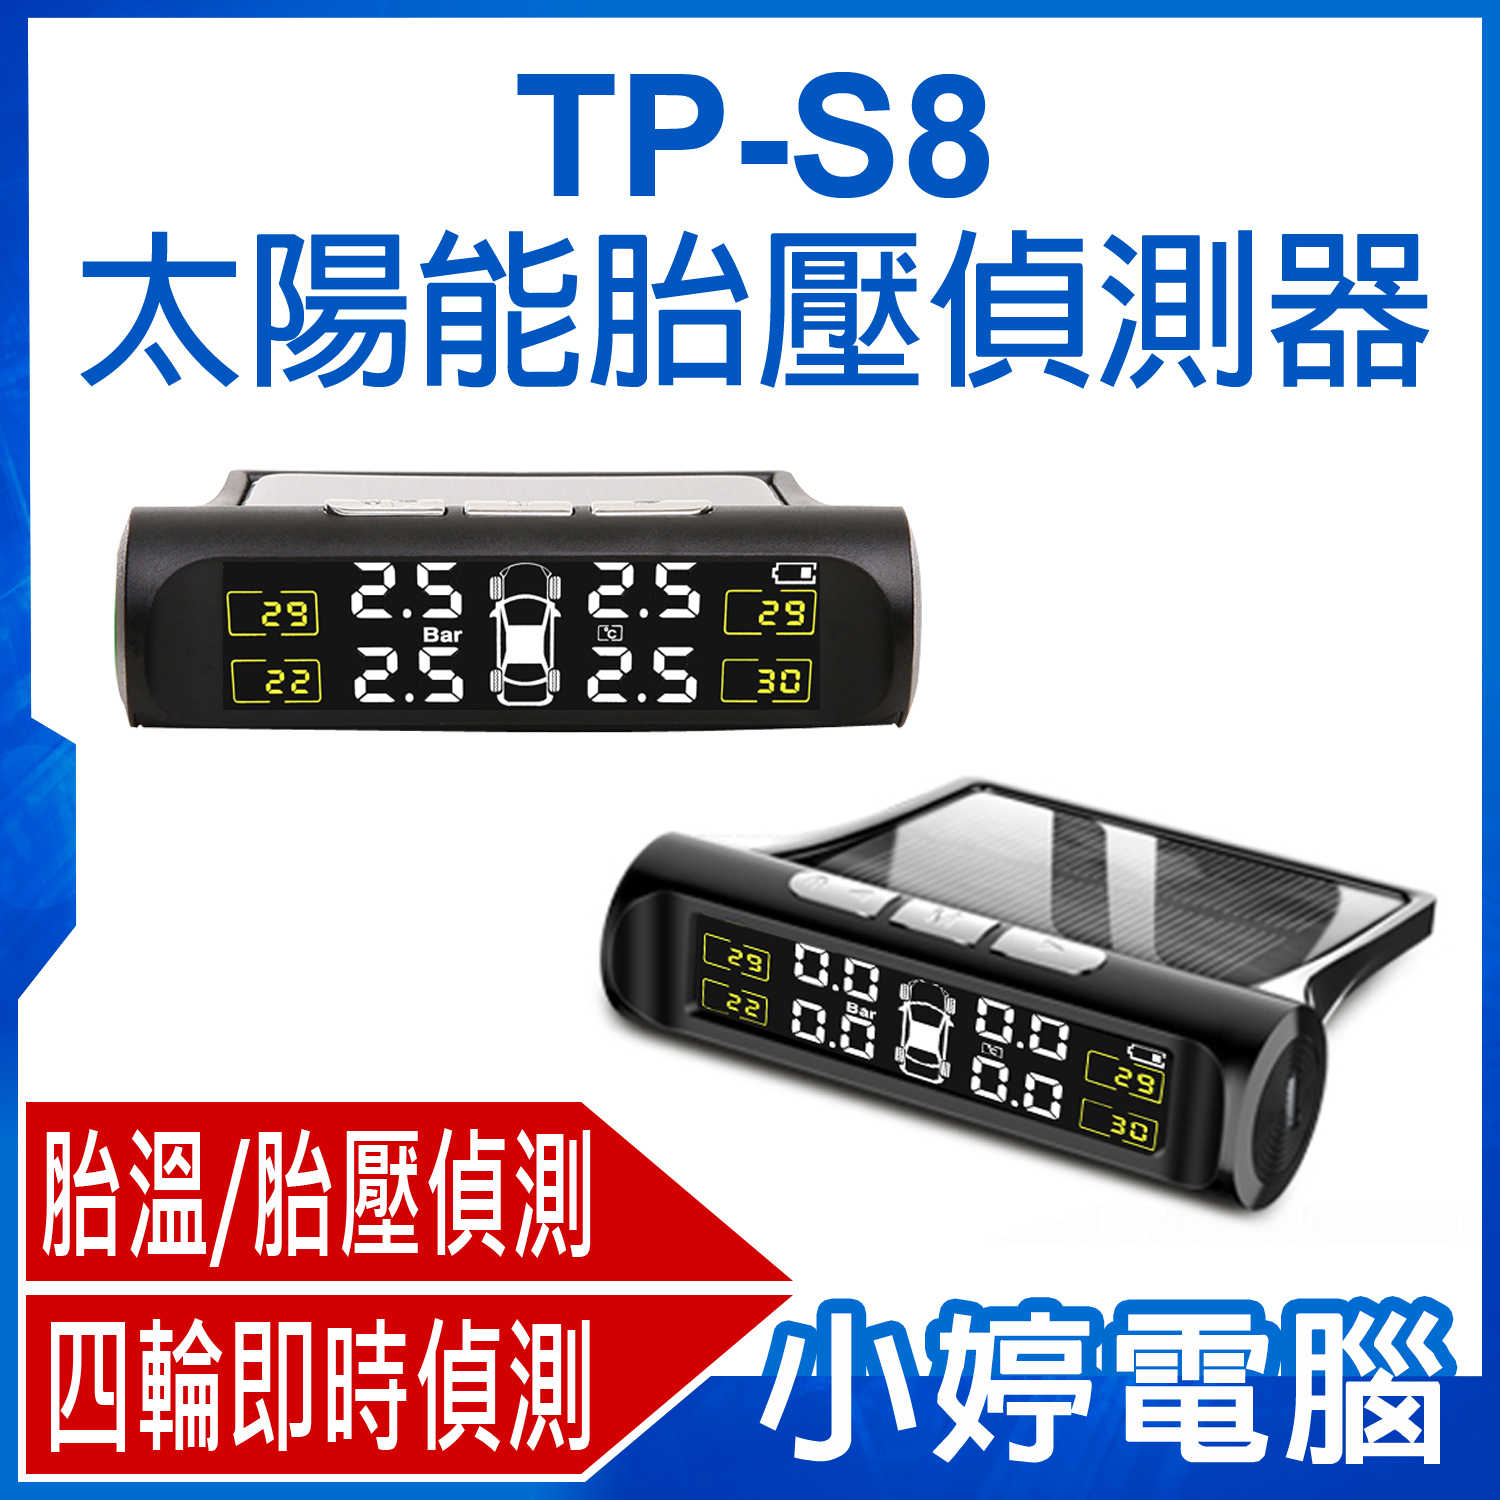 【小婷電腦】TP-S8 太陽能胎壓偵測器 四輪偵測 即時顯示 胎溫/胎壓/漏氣偵測 太陽能+USB充電